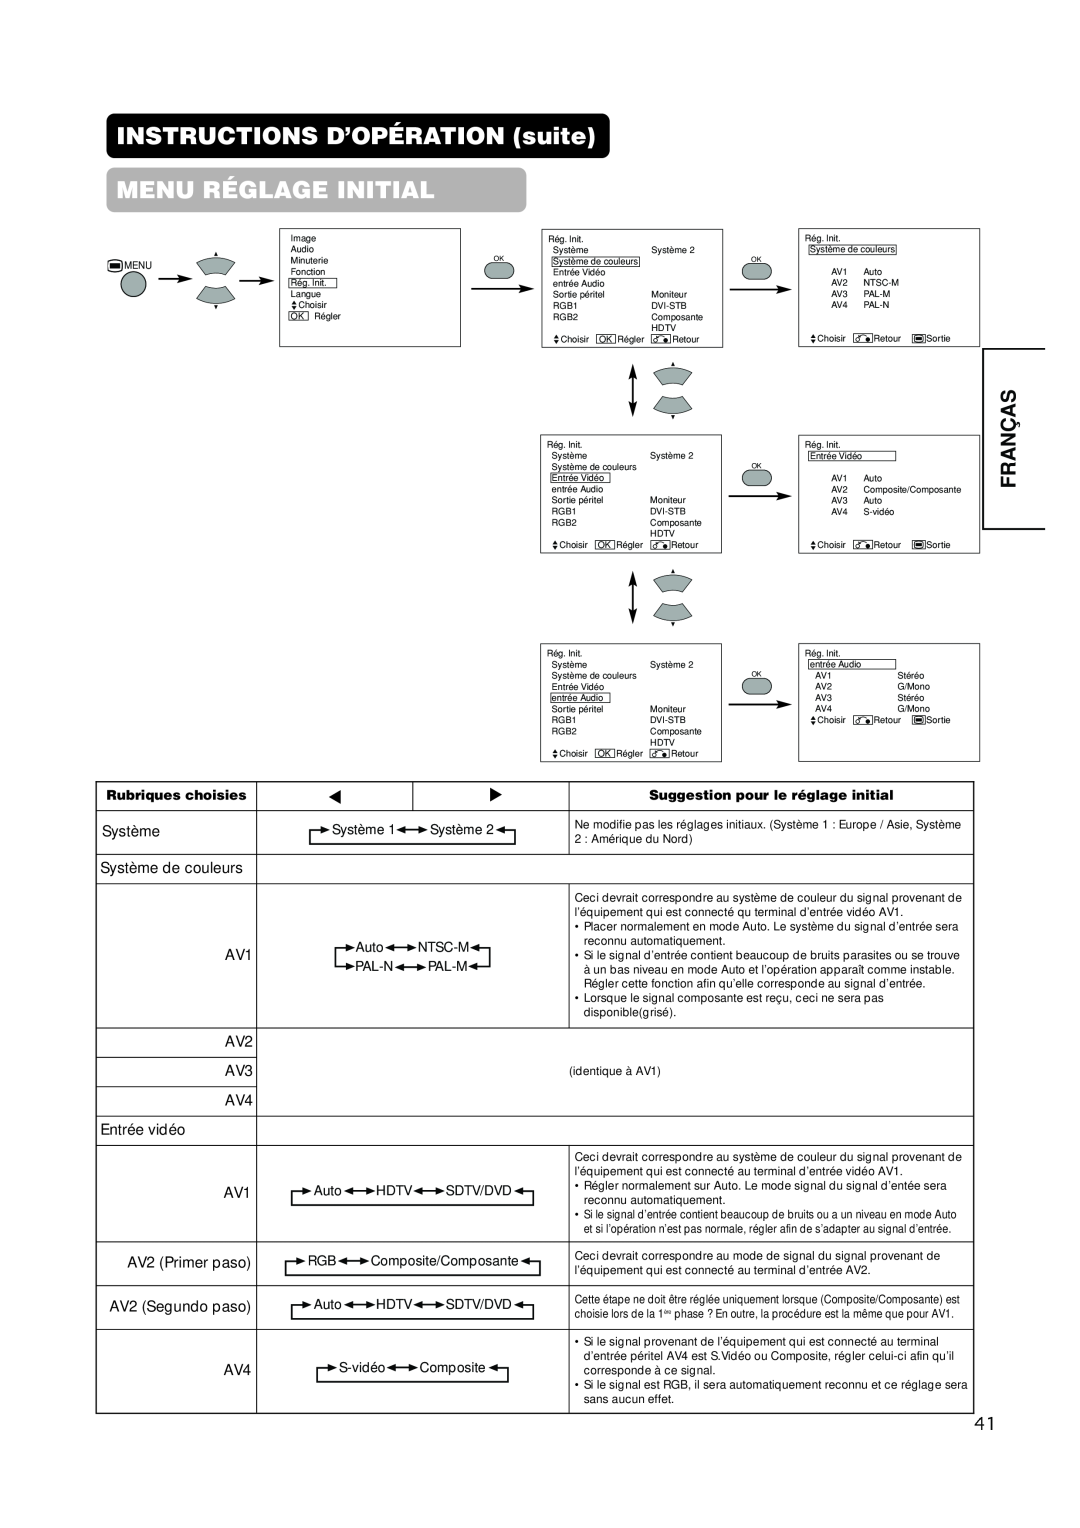 Hitachi PW1A user manual INSTRUCTIONS D’OPÉRATION suite MENU RÉGLAGE INITIAL, Franças 